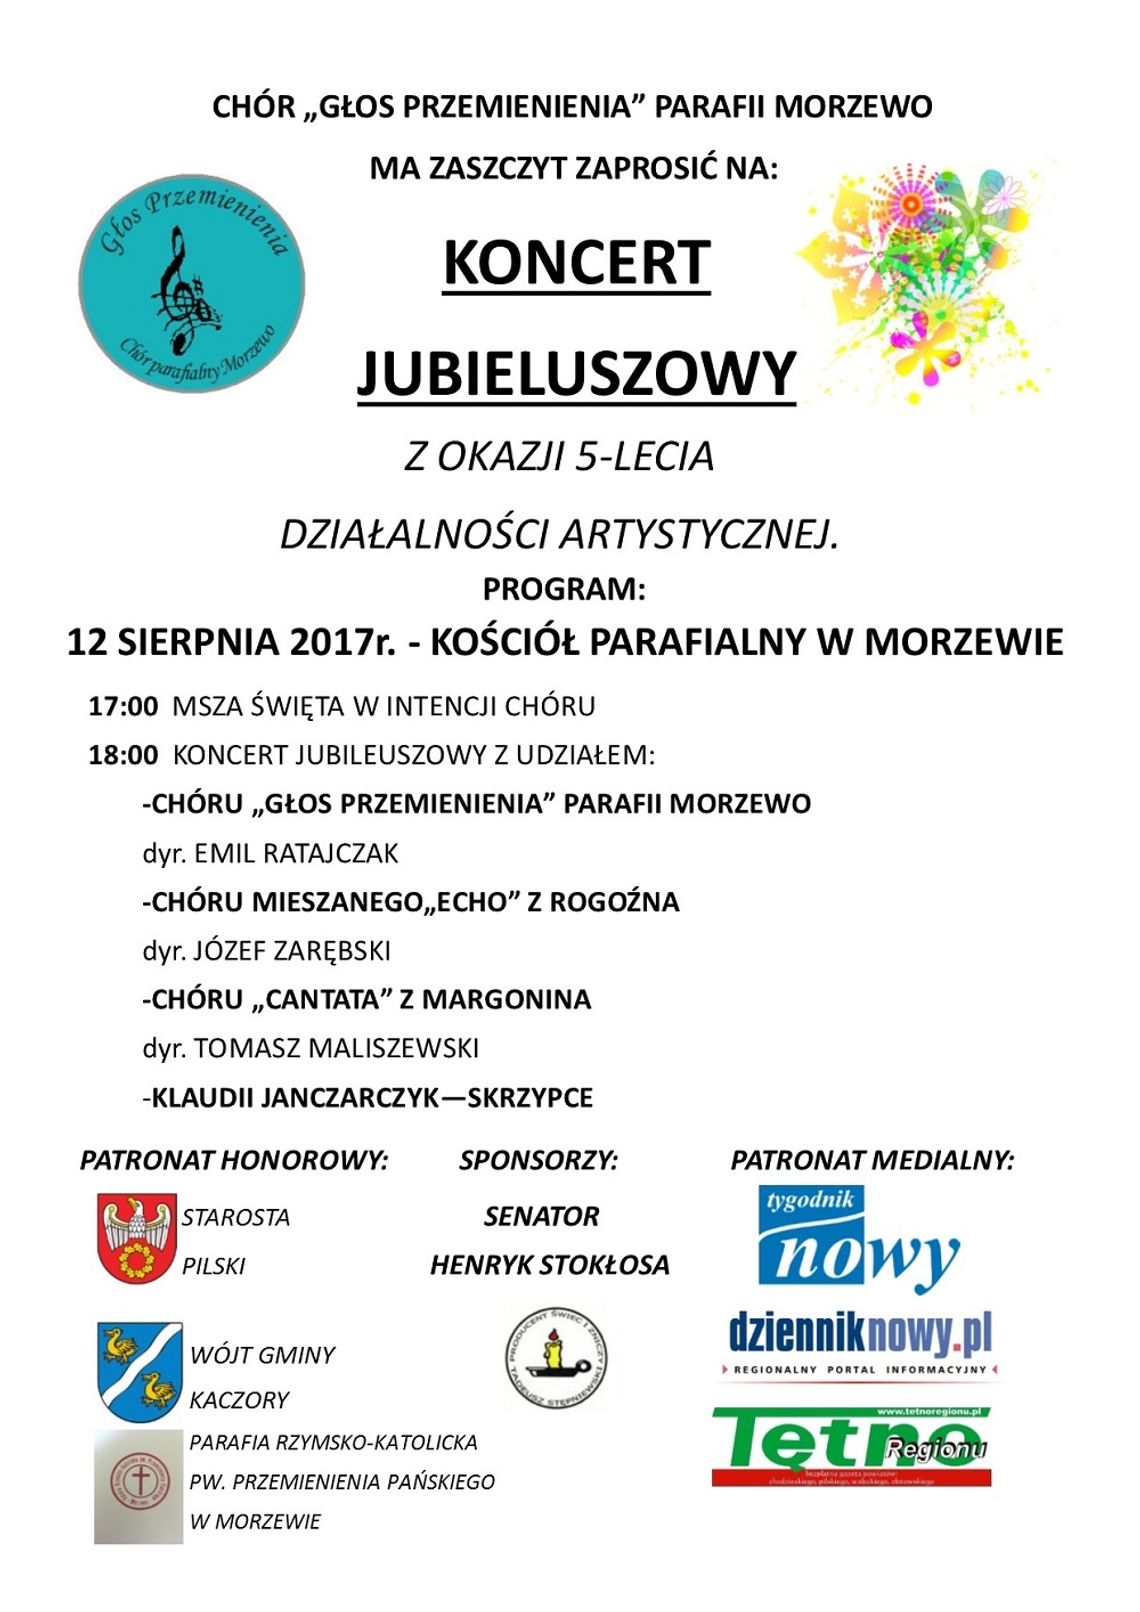 Koncert jubileuszowy w Morzewie